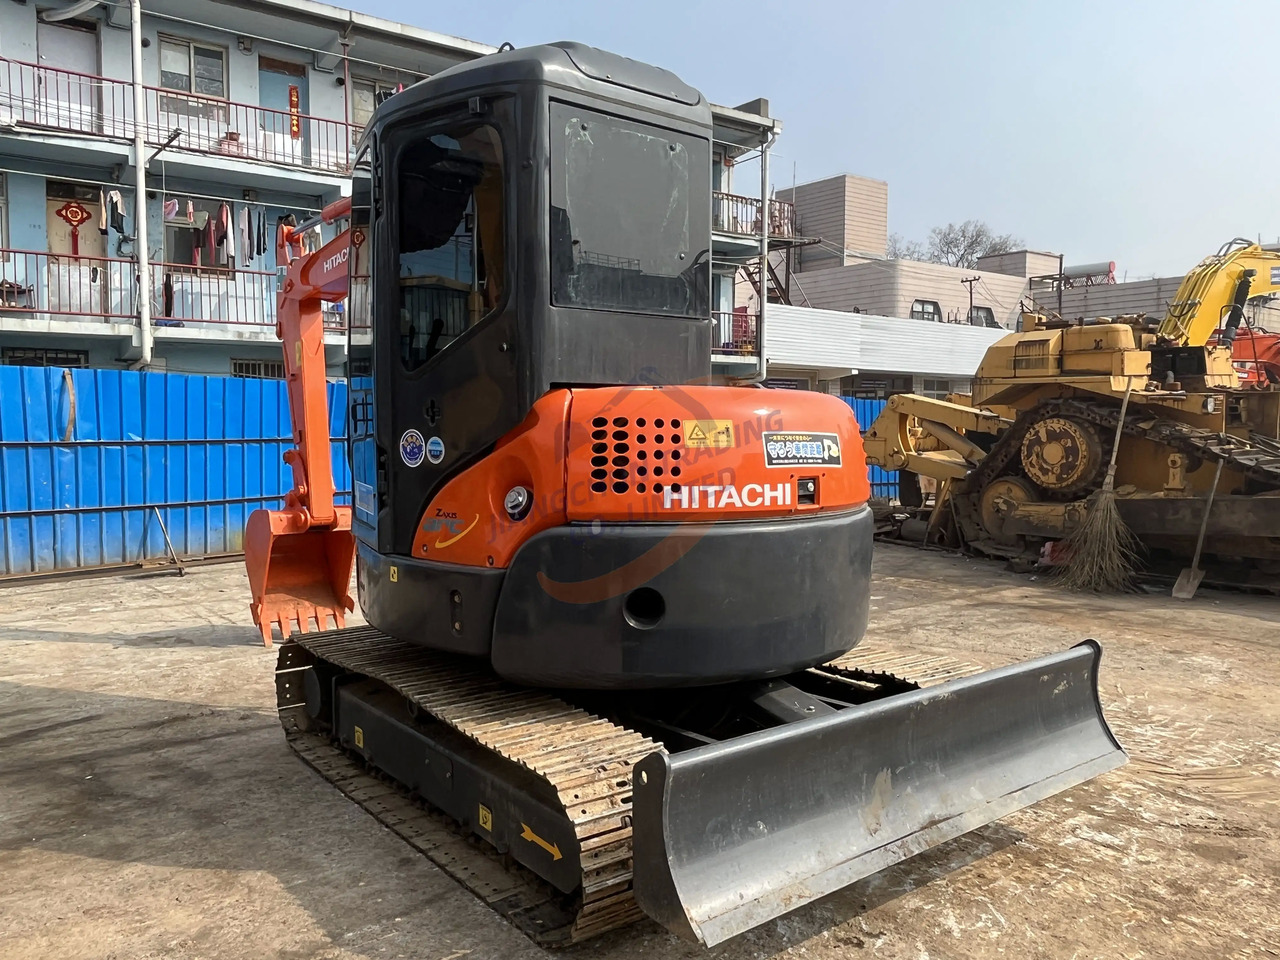 Μίνι εκσκαφέας Used Hitachi excavator ZX55UR in good condition for sale: φωτογραφία 2